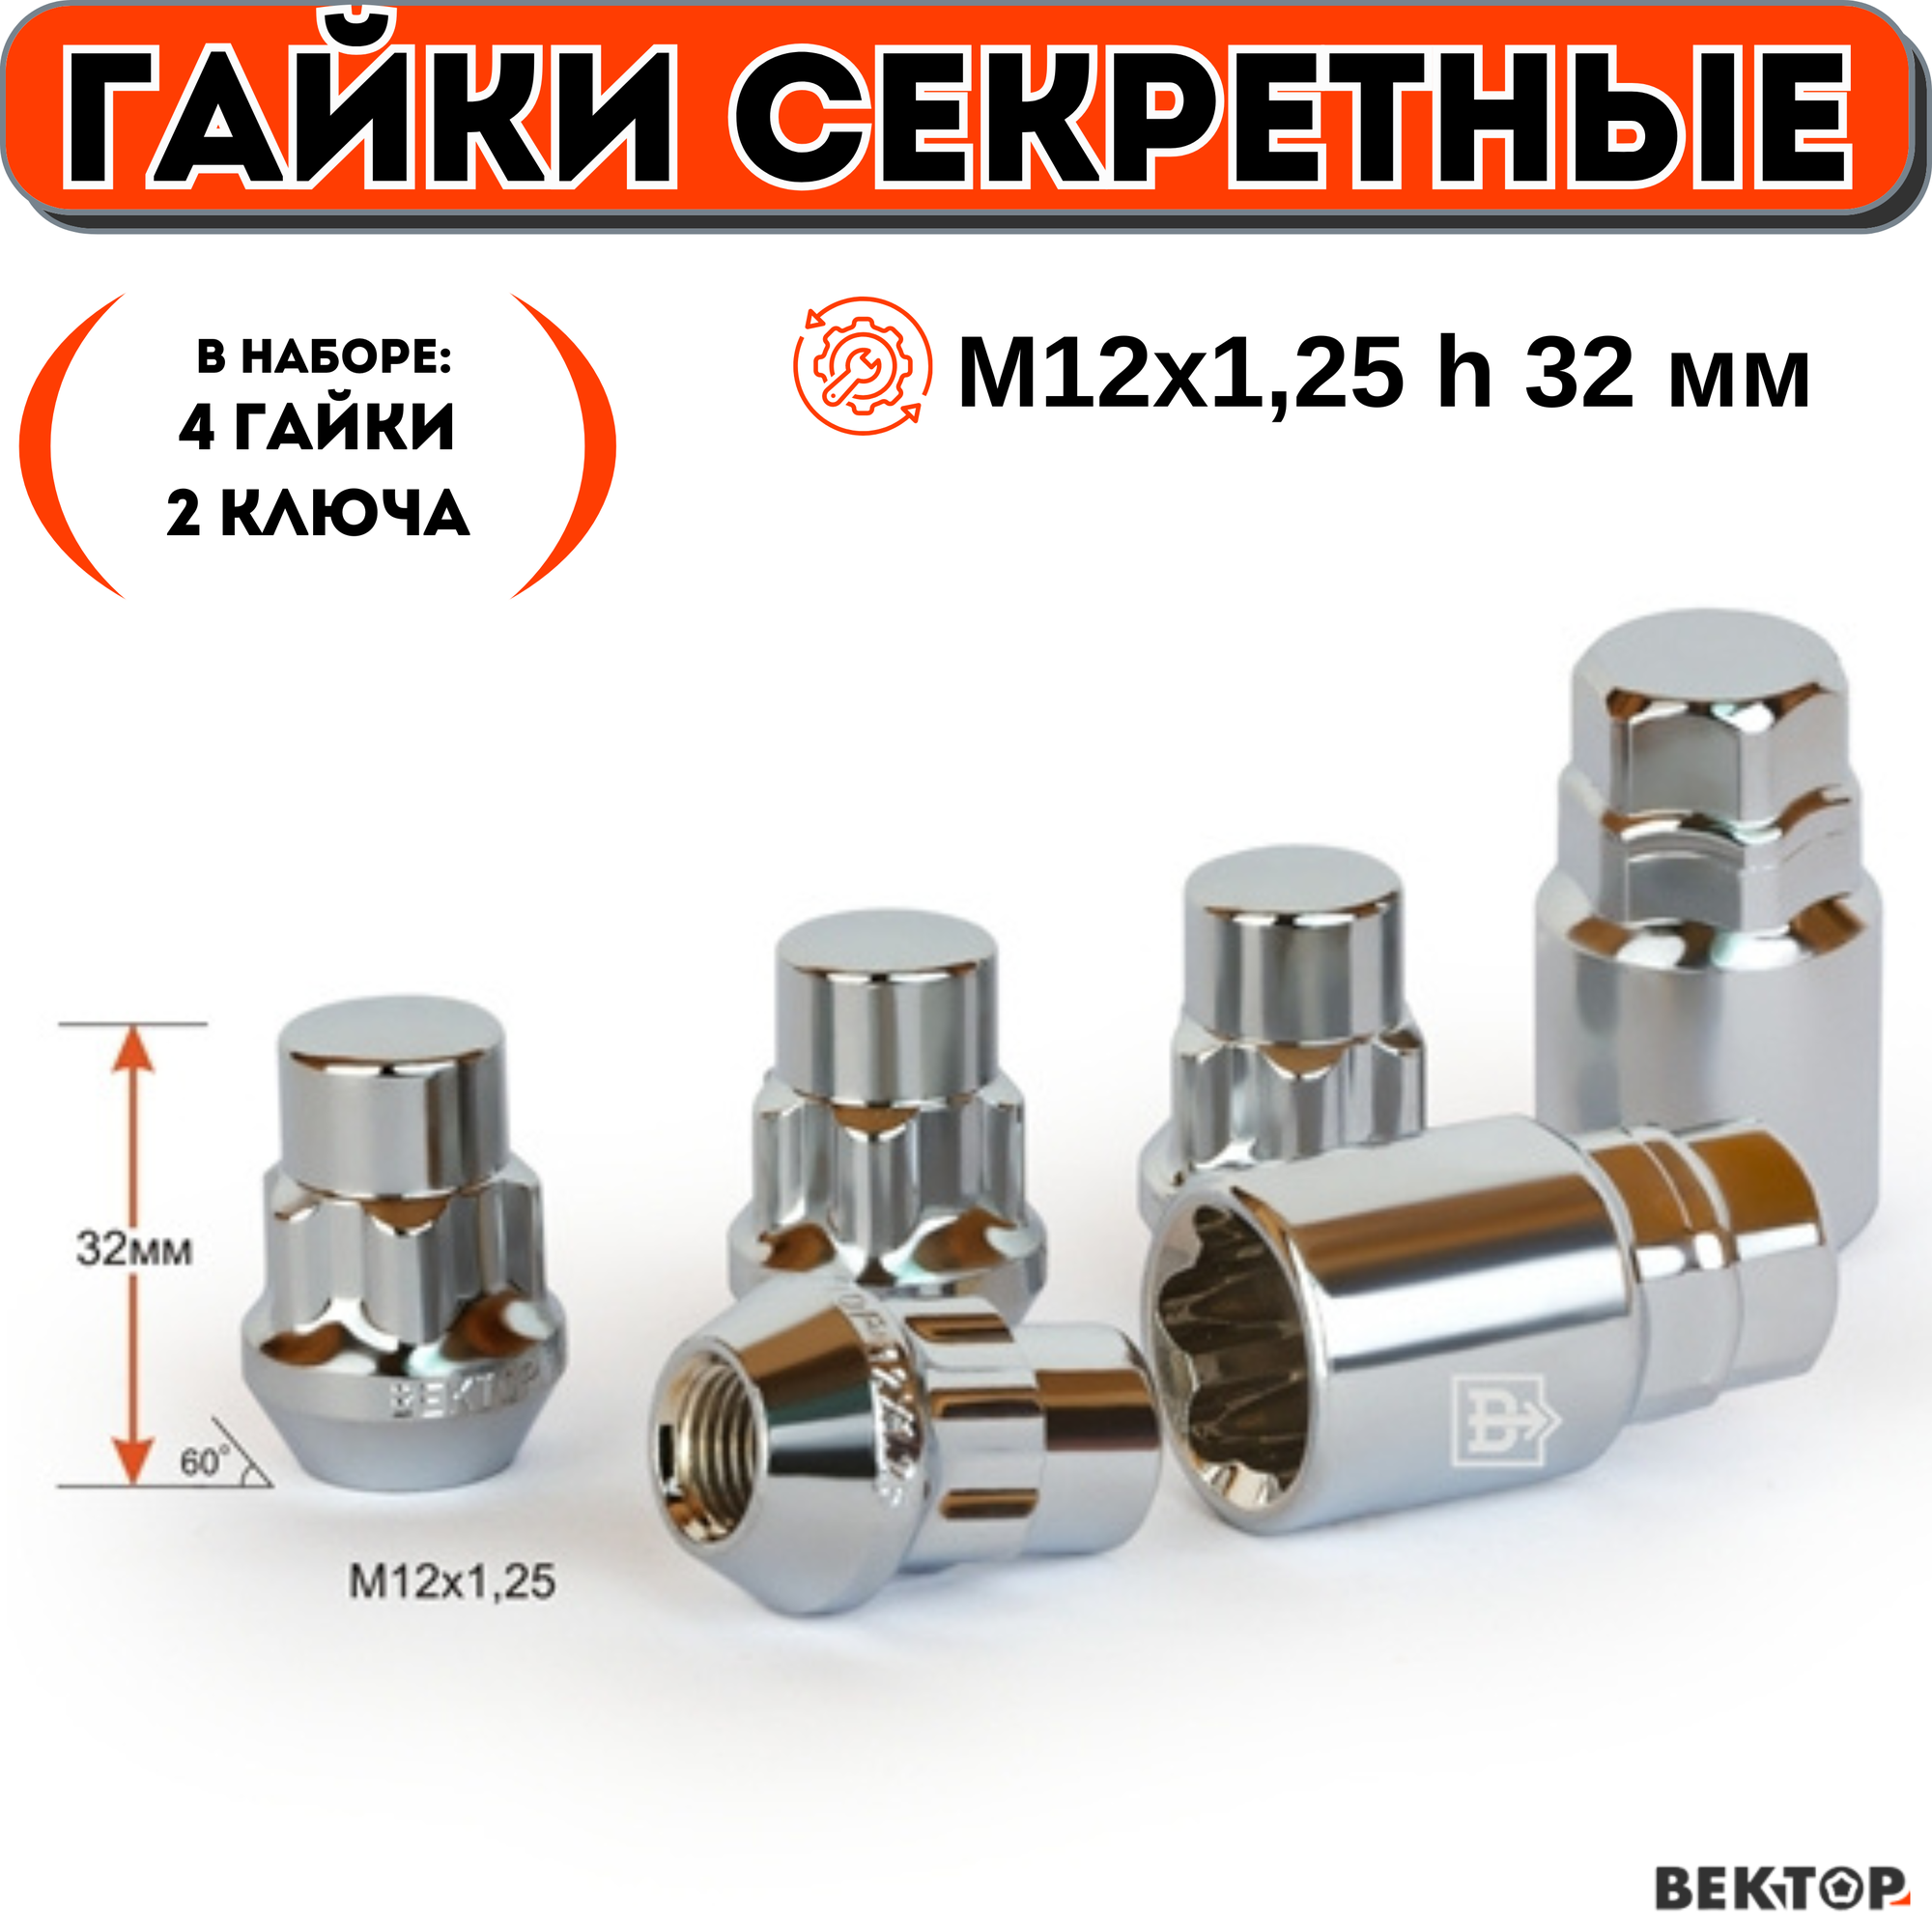 Гайки секретки М12х1,25 h 32 мм, Конус, Закрытая, Хром, вектор (набор 4 гайки+2 ключа)